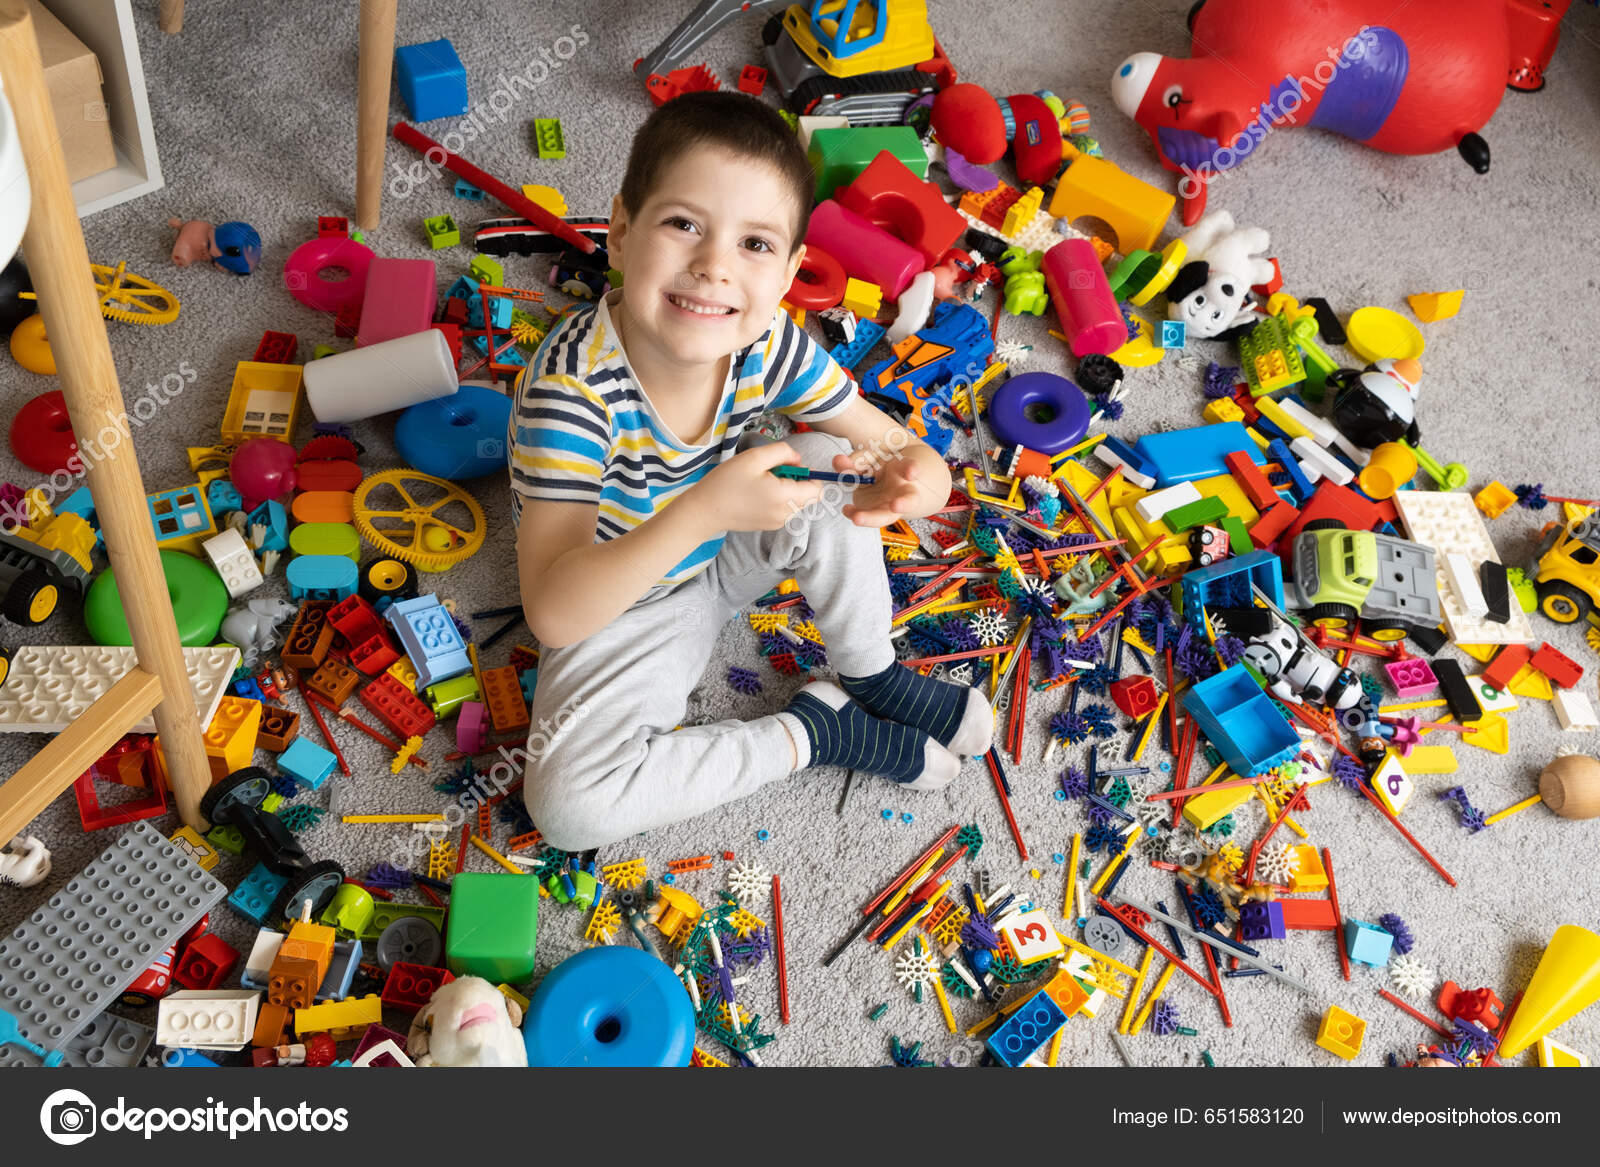 Retrato de un niño de 5 años contra el fondo de juguetes dispersos